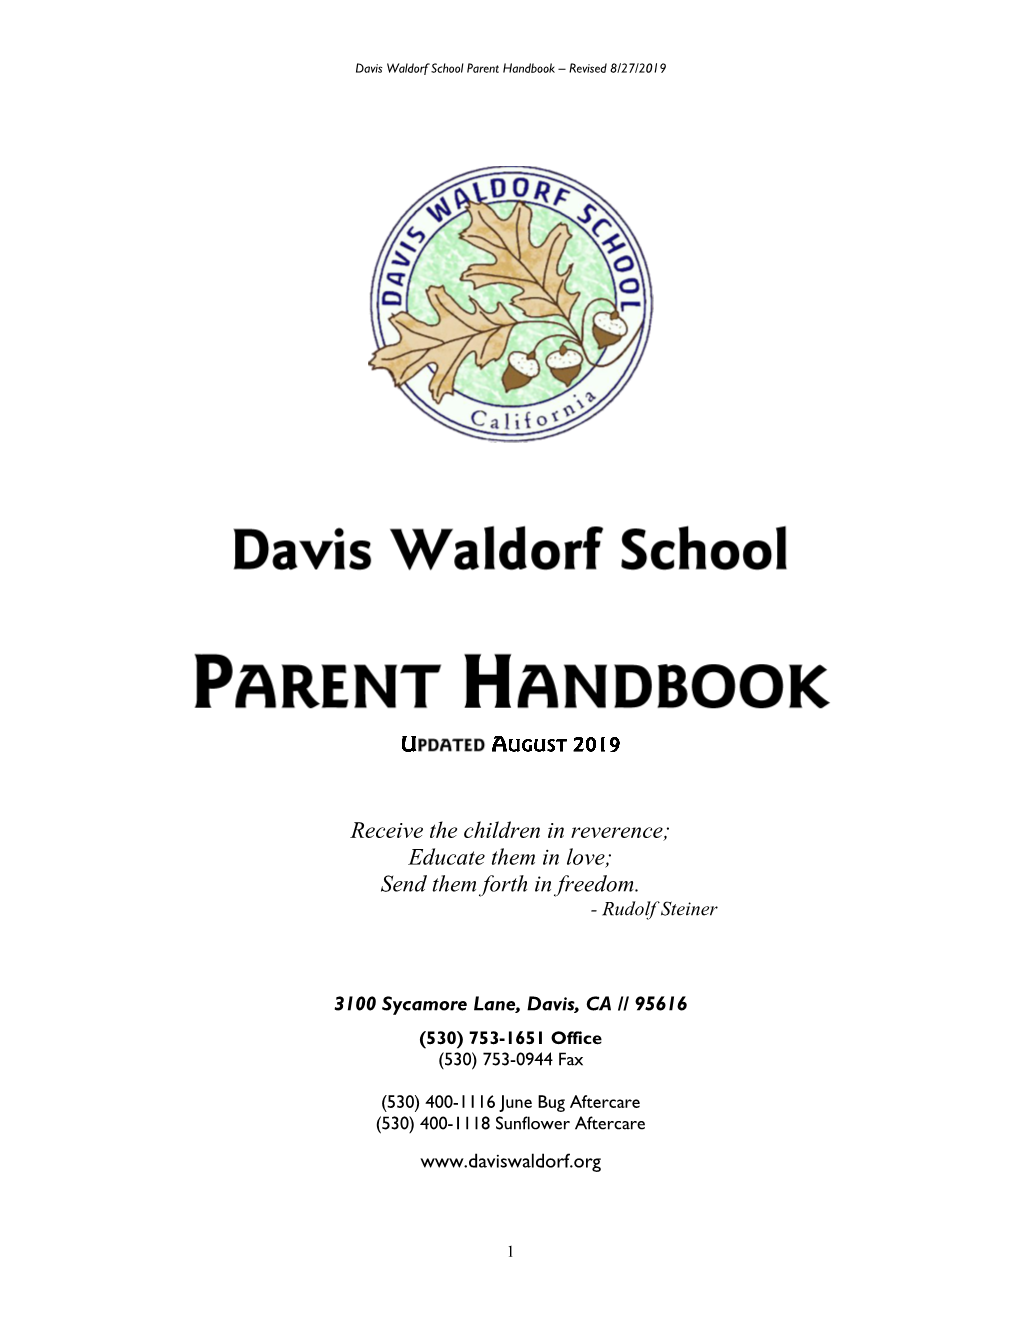 Parent Handbook 19-20